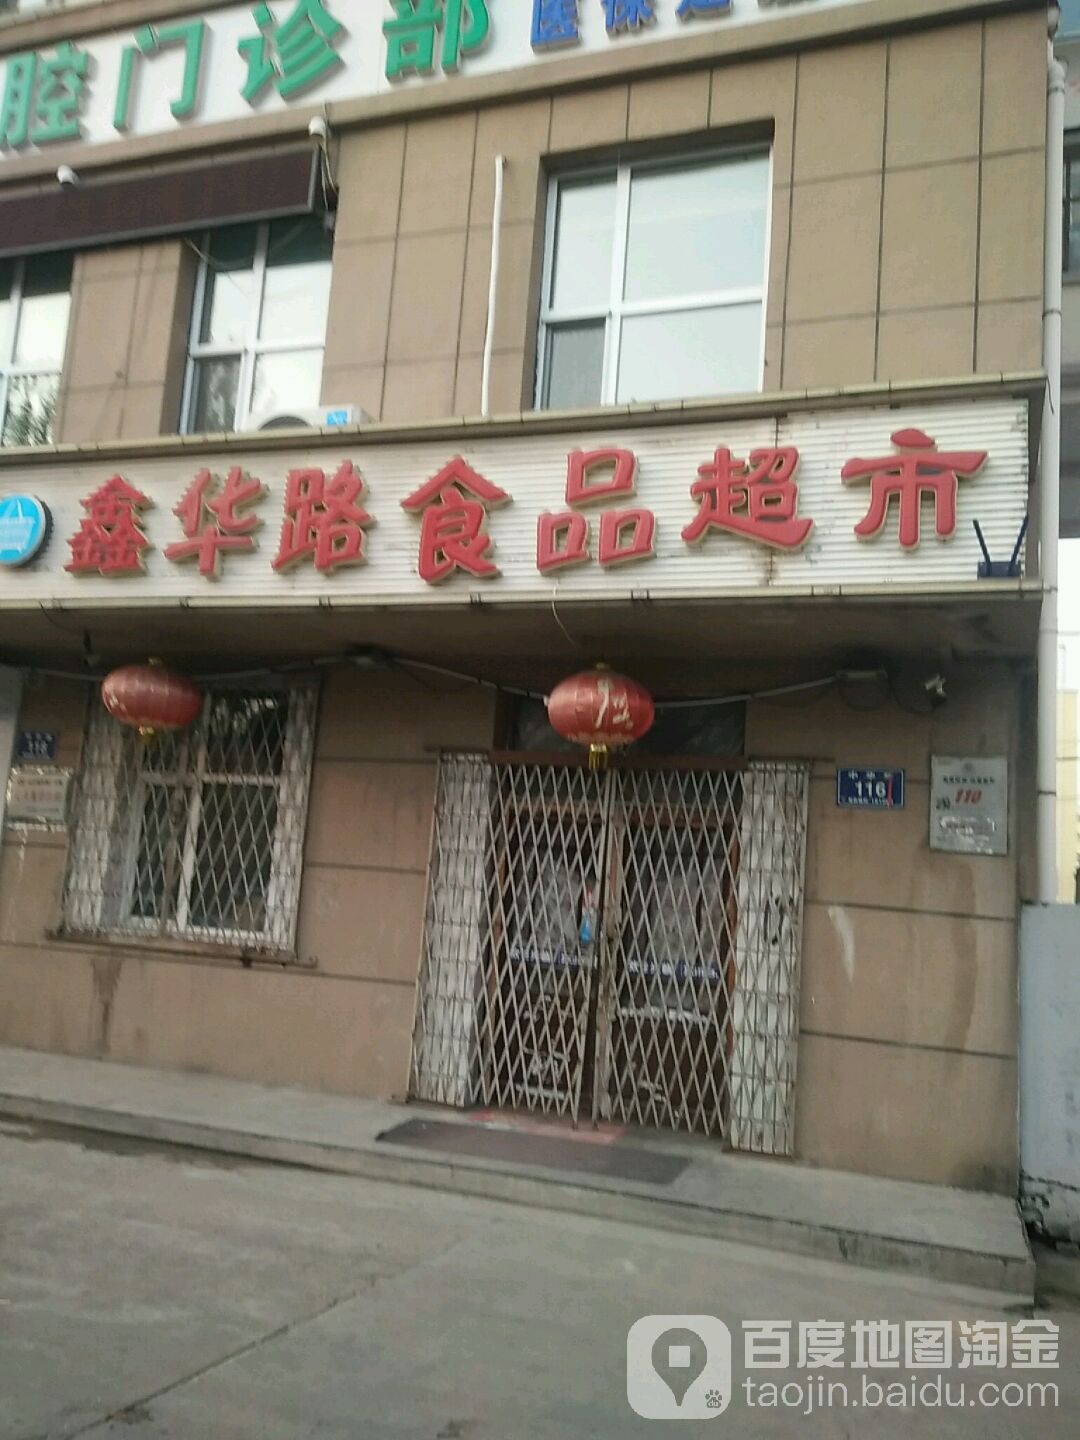 中華路食品超市